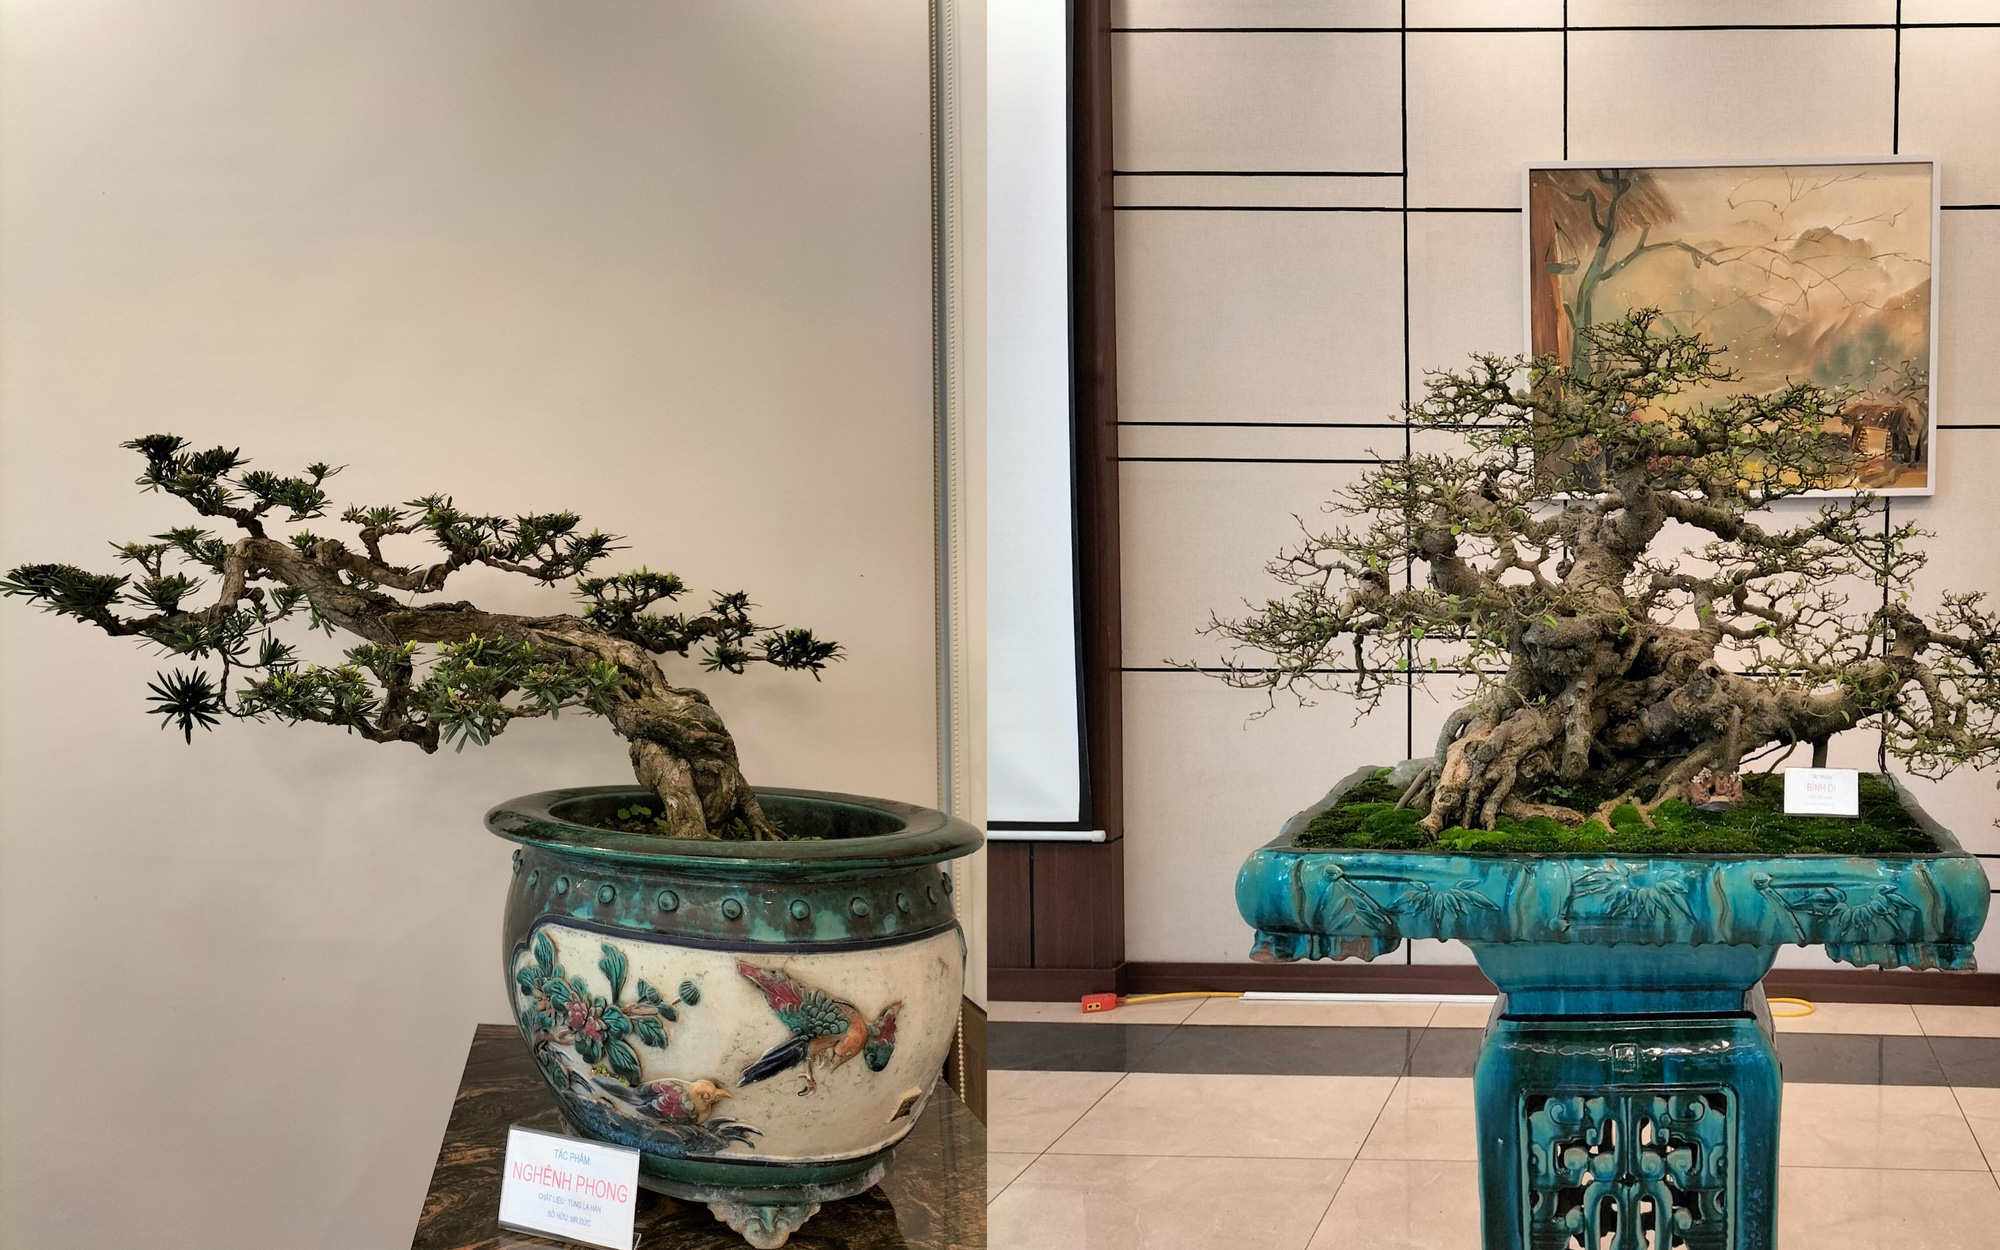 Cực phẩm cây cảnh bonsai hội tụ 4 tiêu chí "Cổ, kỳ, mỹ, văn", hệ chơi cây nức nở "đẹp hết nước chấm"